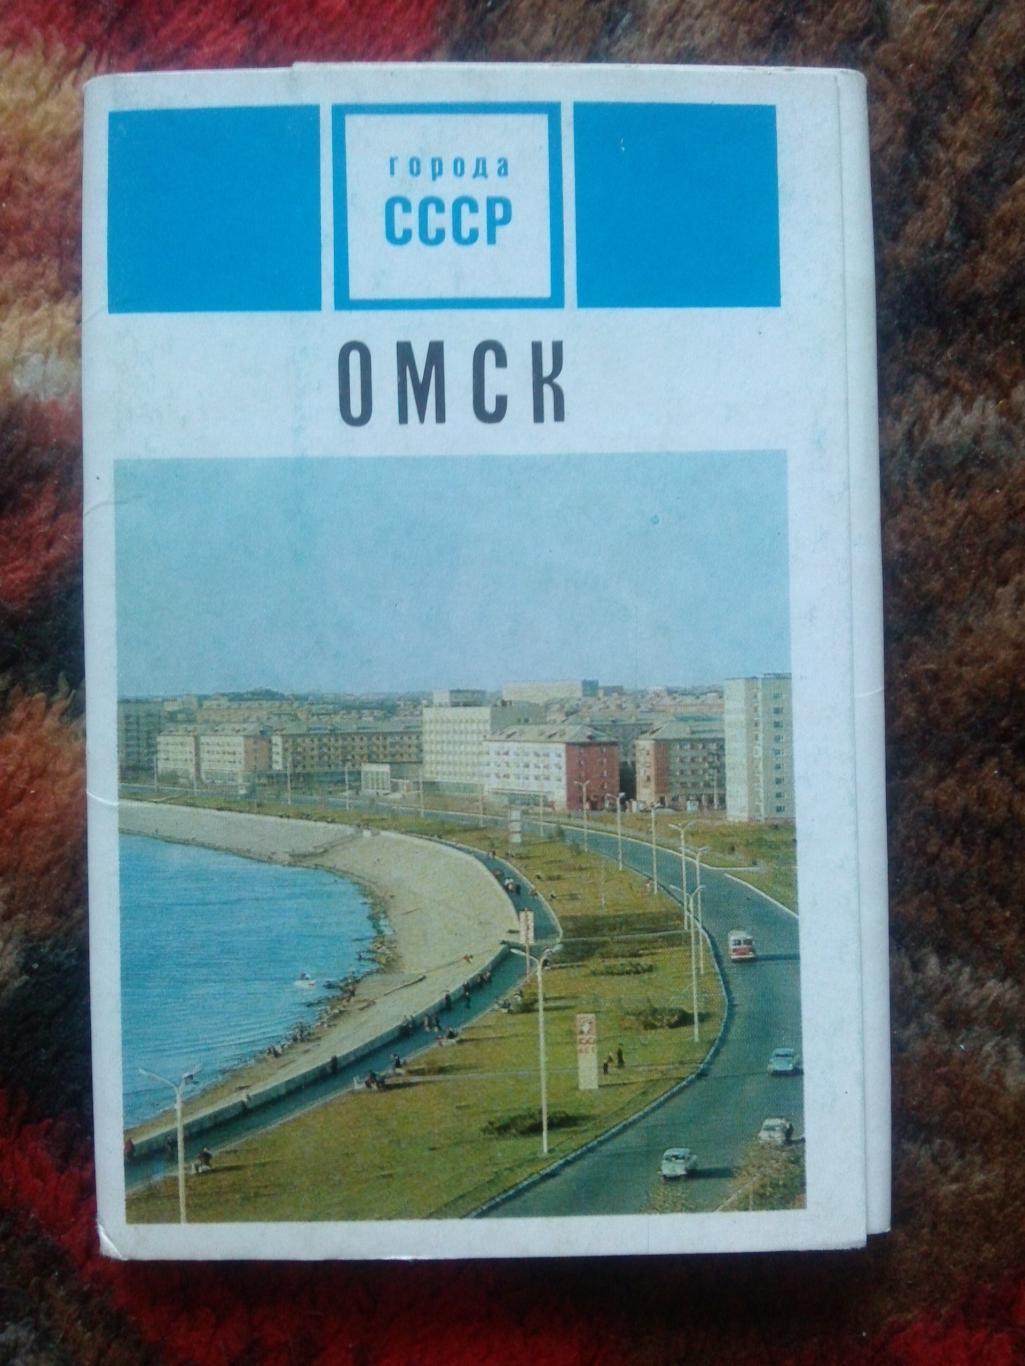 Города СССР : Омск 1971 г. полный набор - 15 открыток (чистые , в идеале)